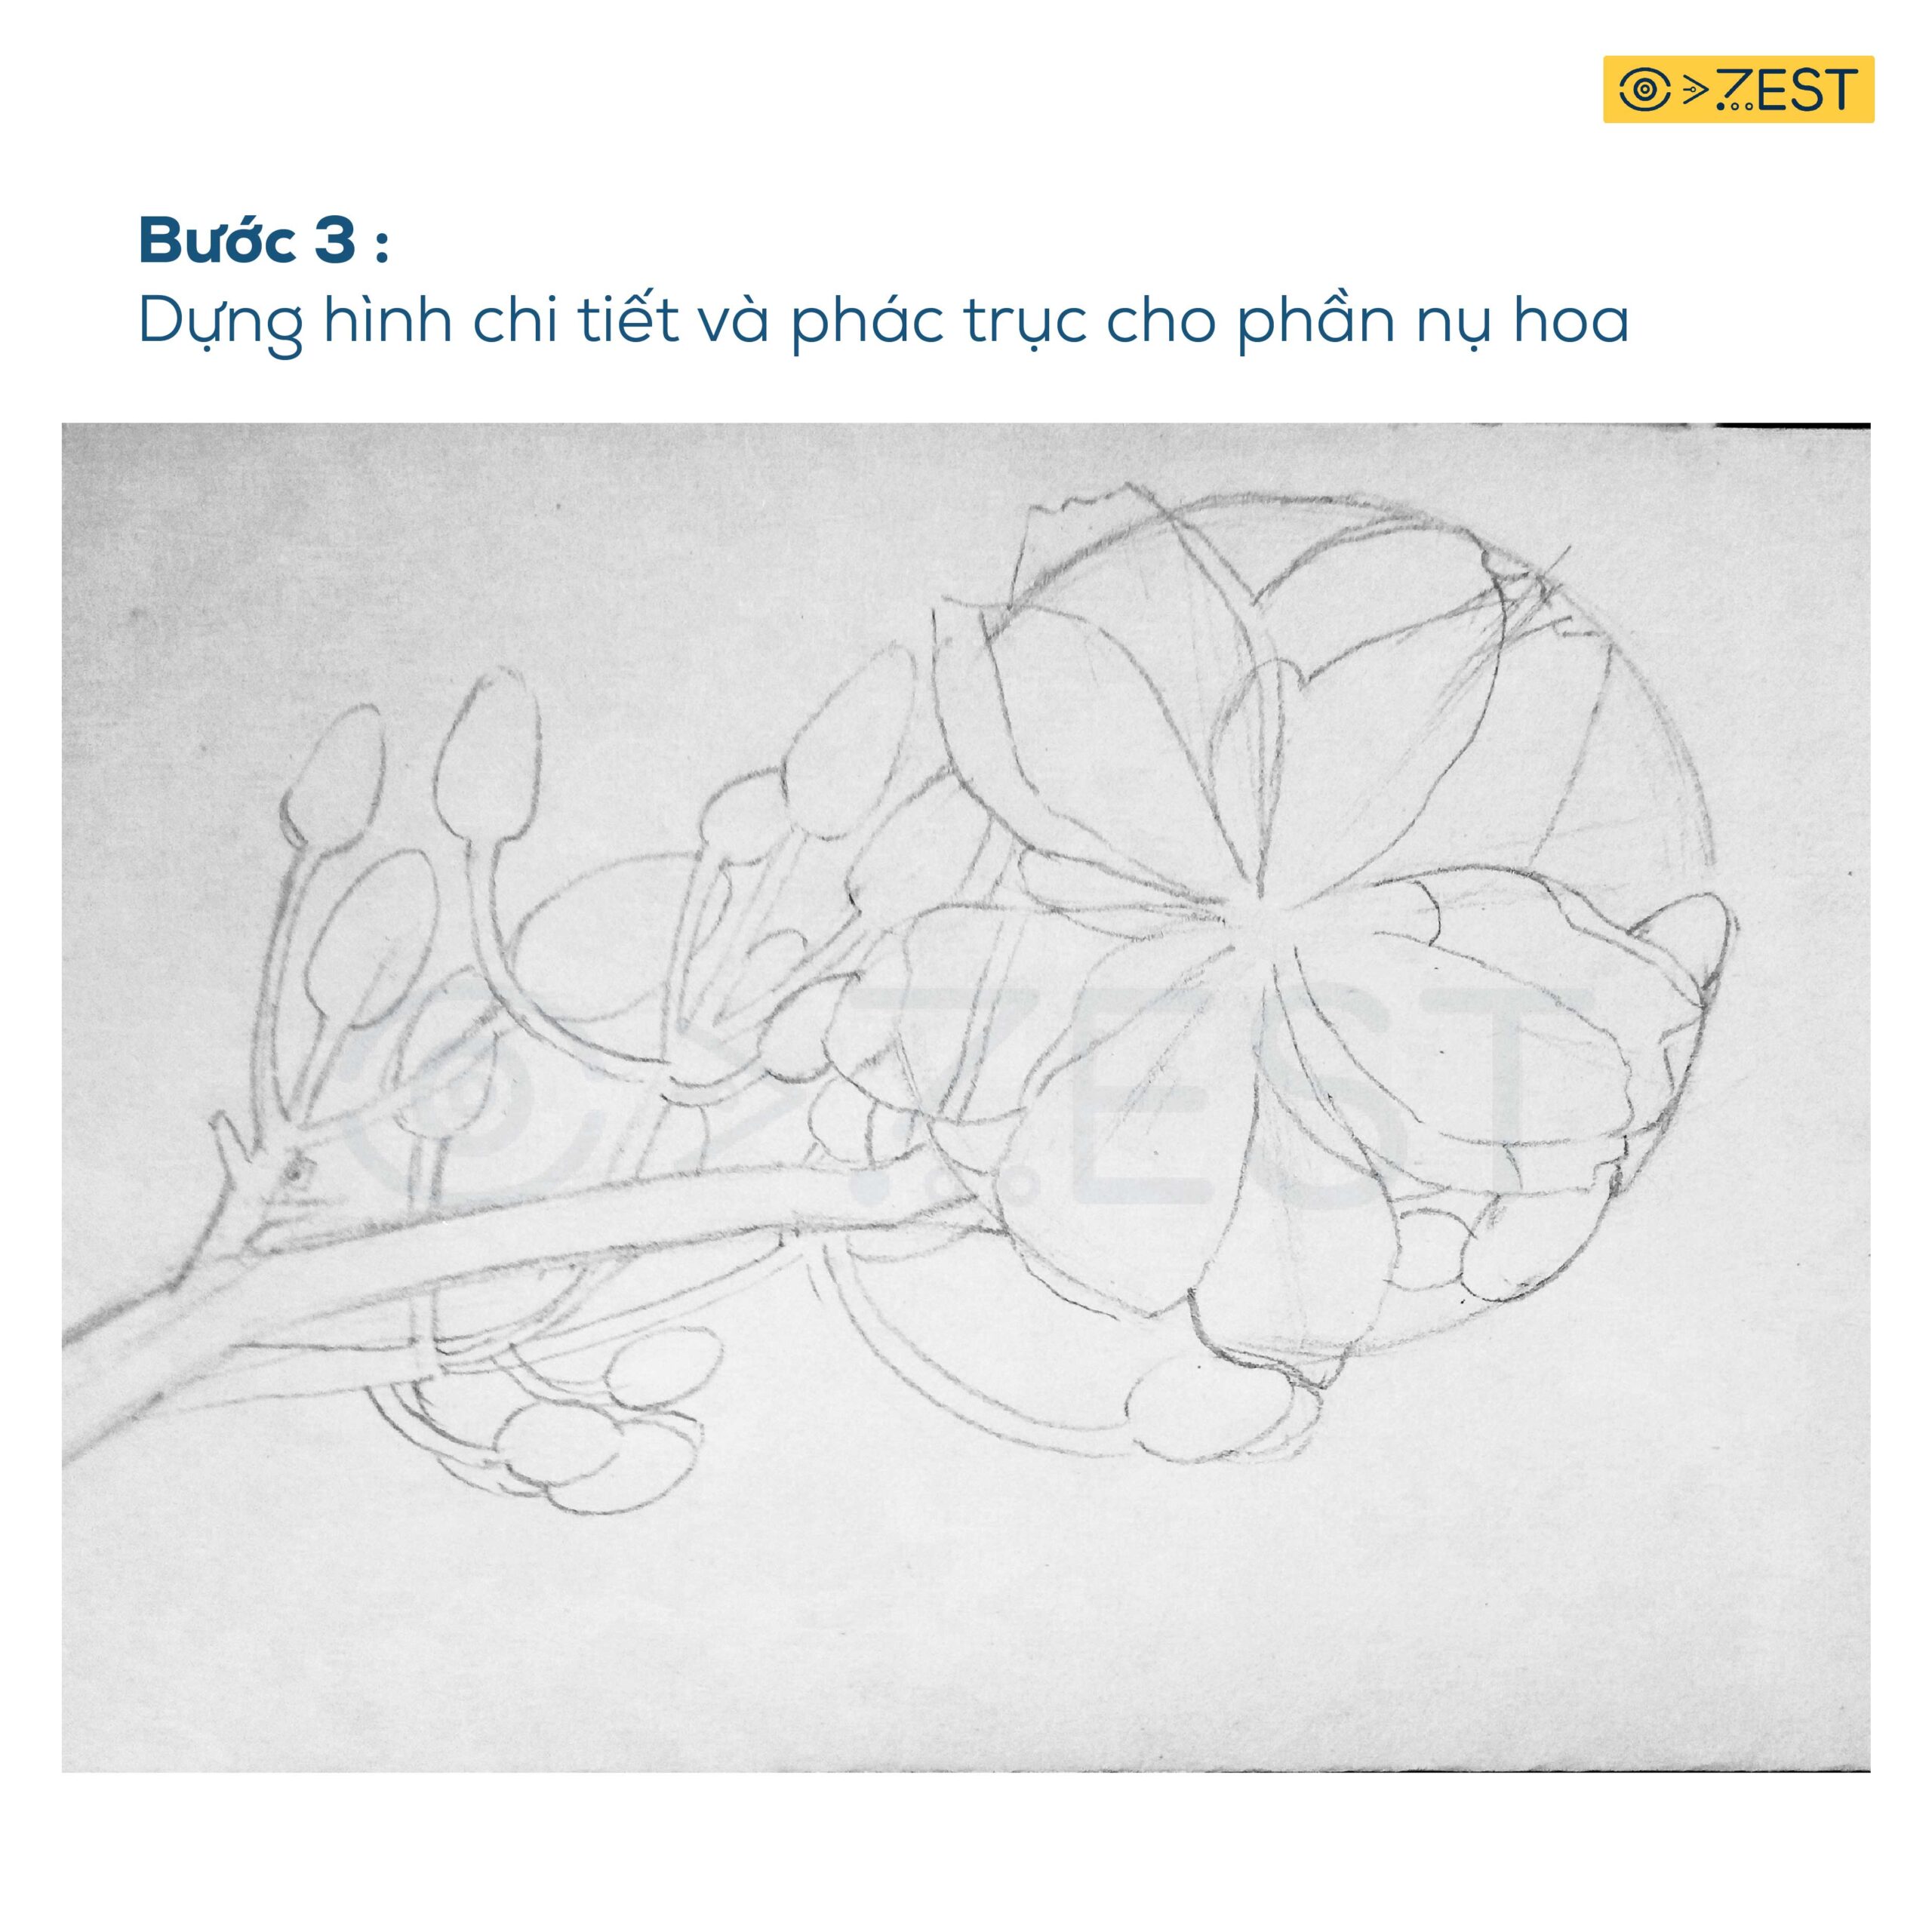 Cách Vẽ Tranh Phong Cảnh Bằng Bút Chì  How to draw scenery with pencil   YouTube